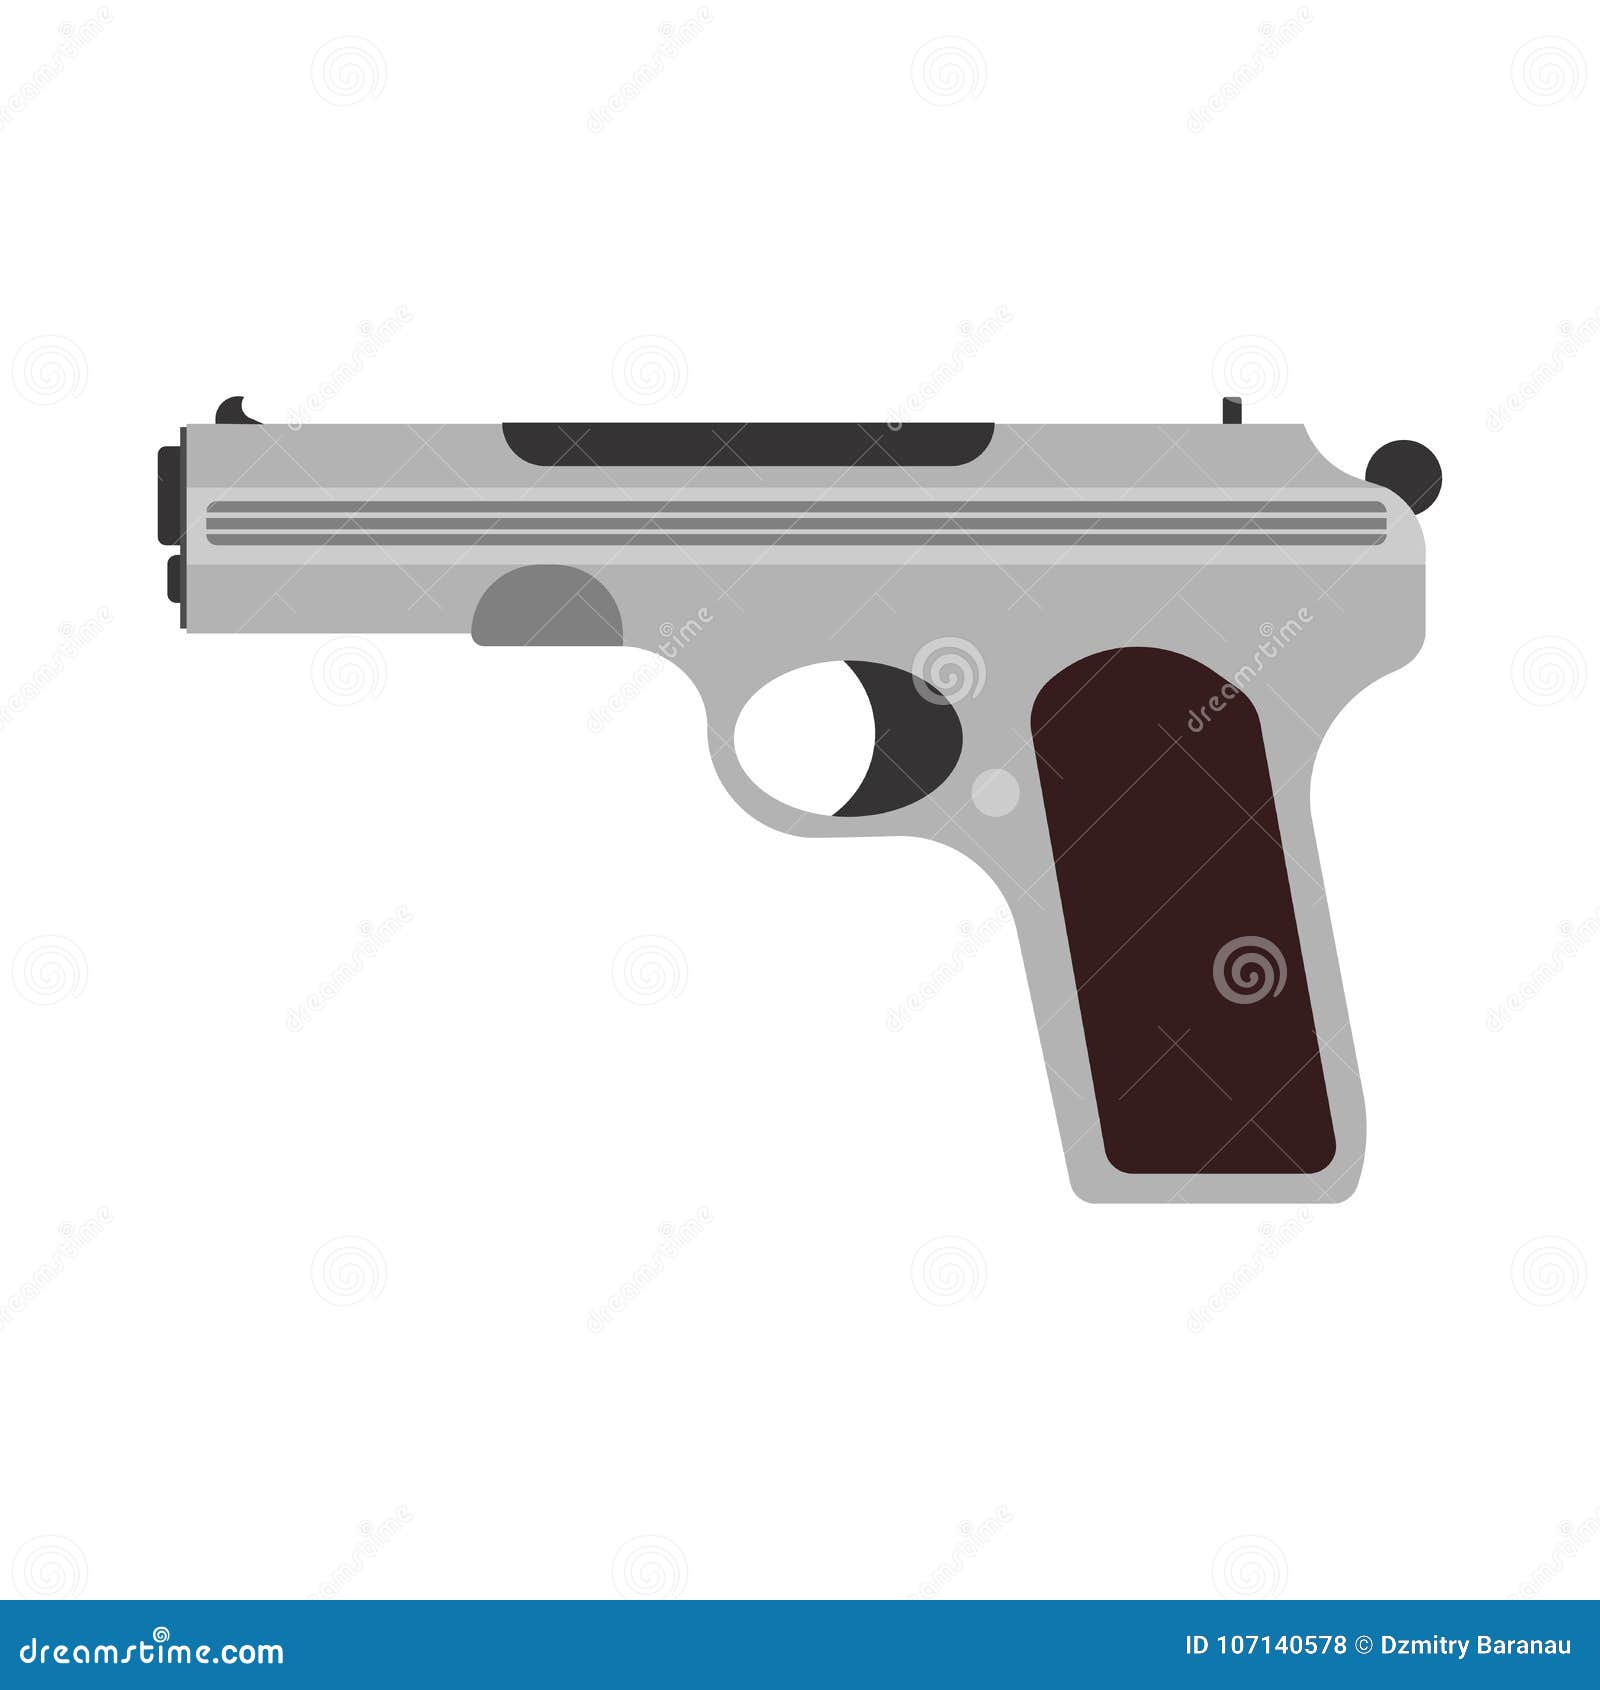 Militaires D'icône De Pistolet D'arme D'illustration De Fusil De